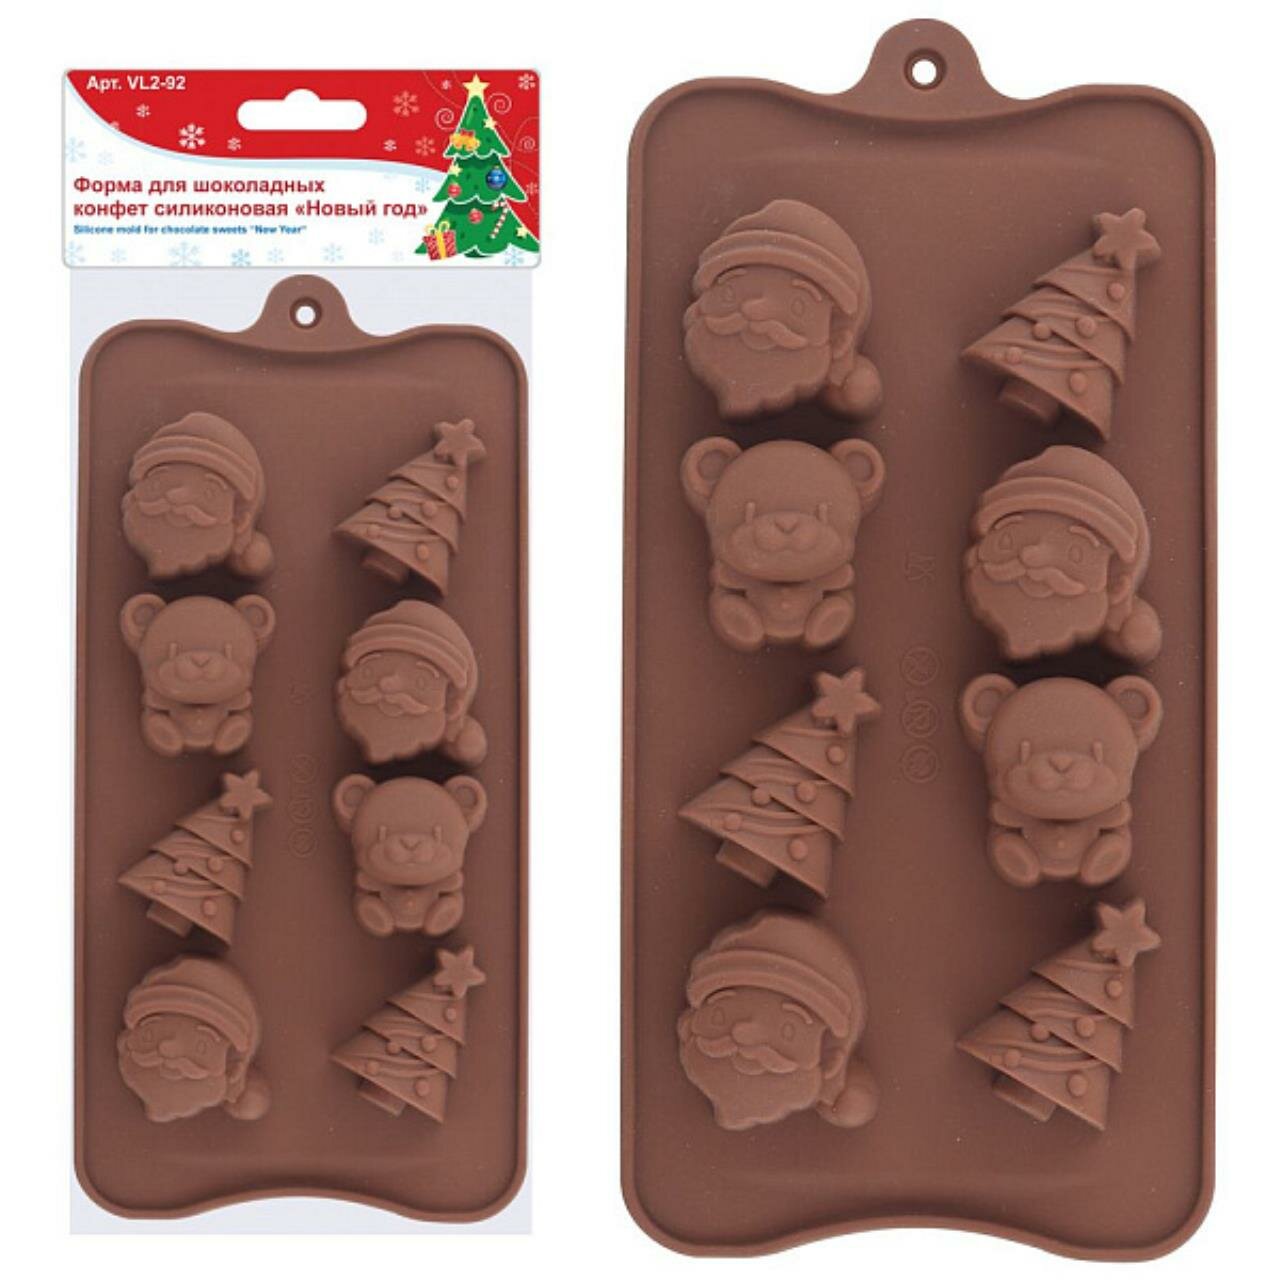 Форма для шоколадных конфет силиконовая "Новый год". Размер 21х10,5х1,5см.